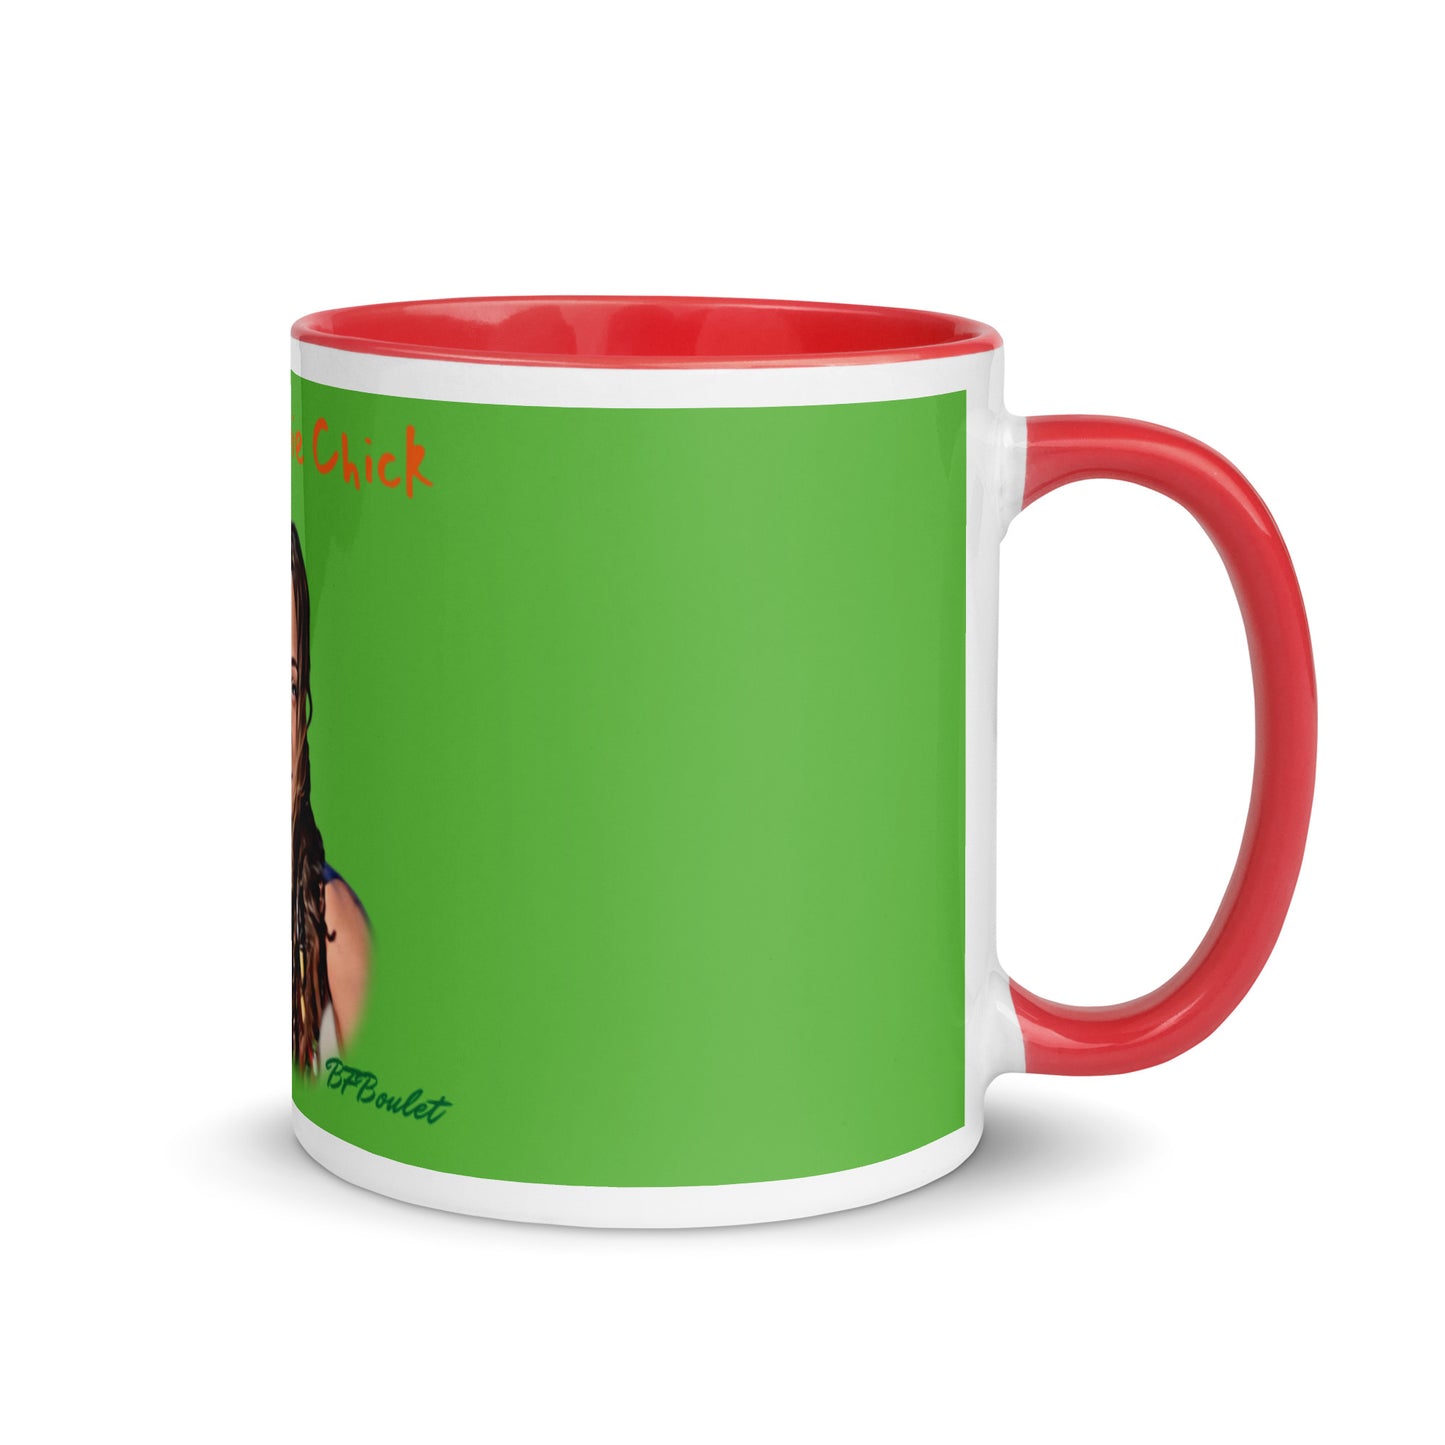 Grinch Color Mug - OG Hippie Chick (BFBoulet)